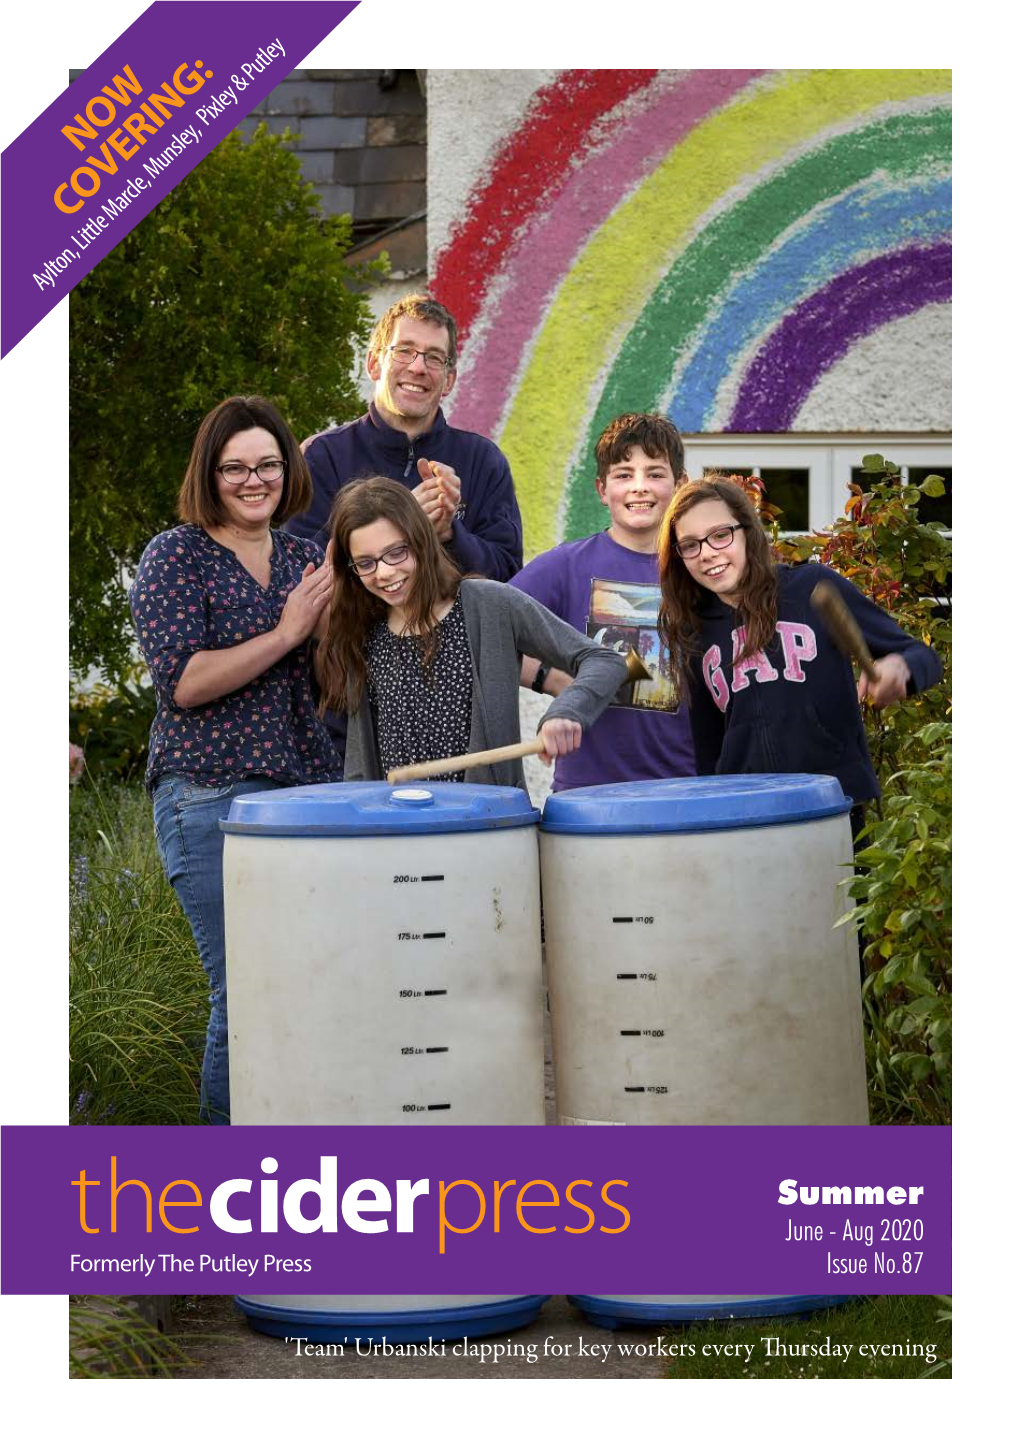 Cider Press Summer 2020